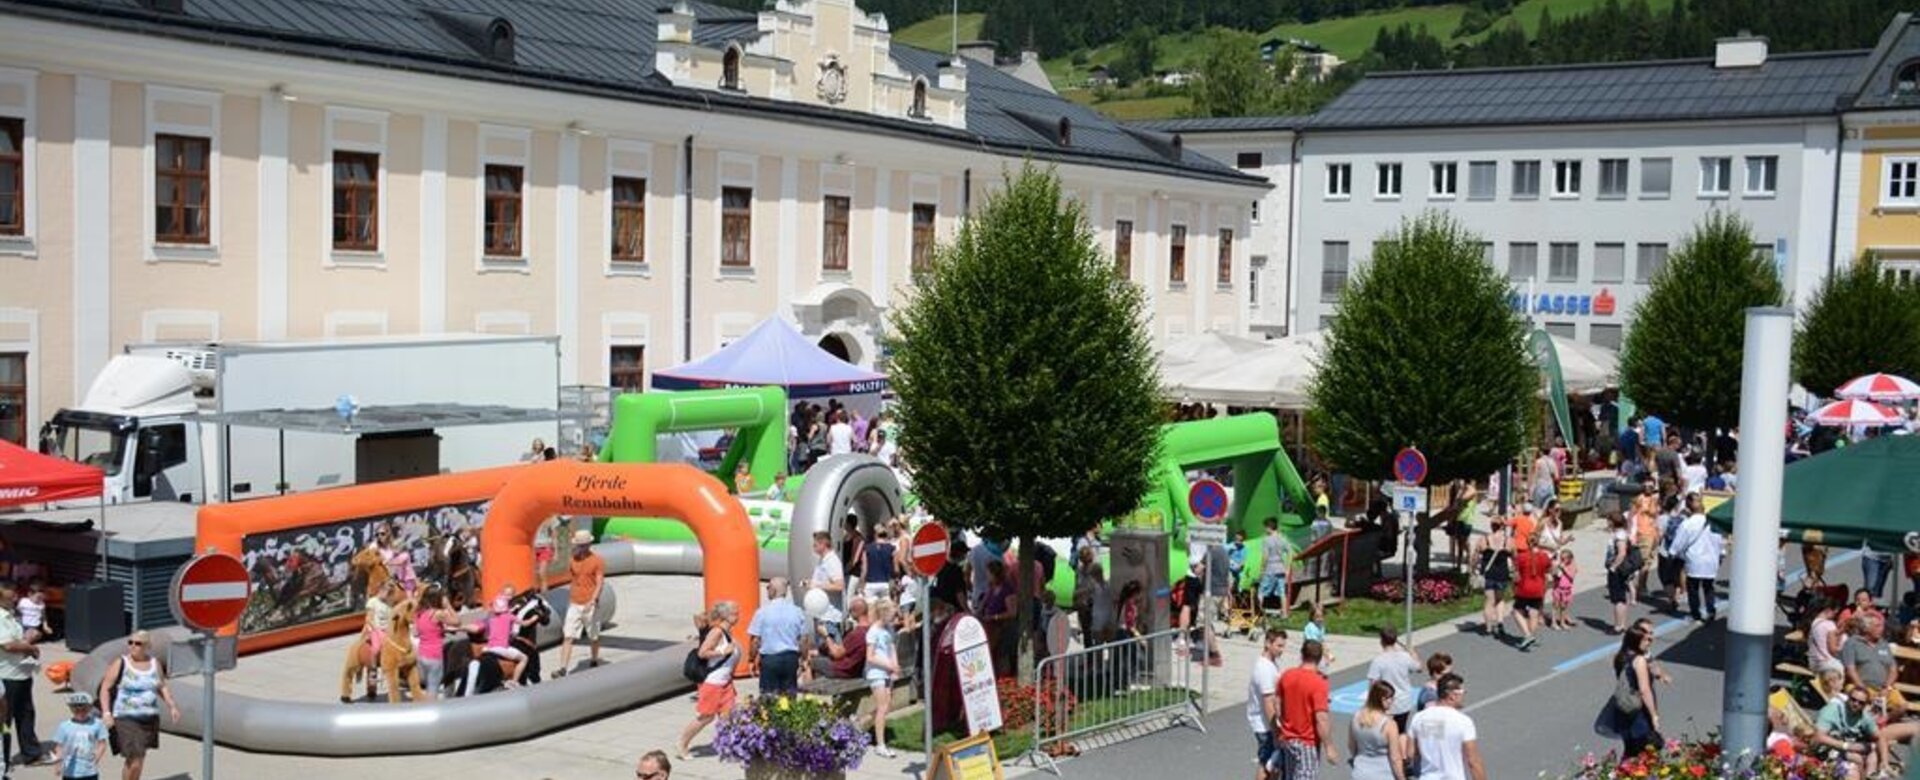 Mega Kindertag in Radstadt | © Tourismusverband Radstadt/Foto Tom